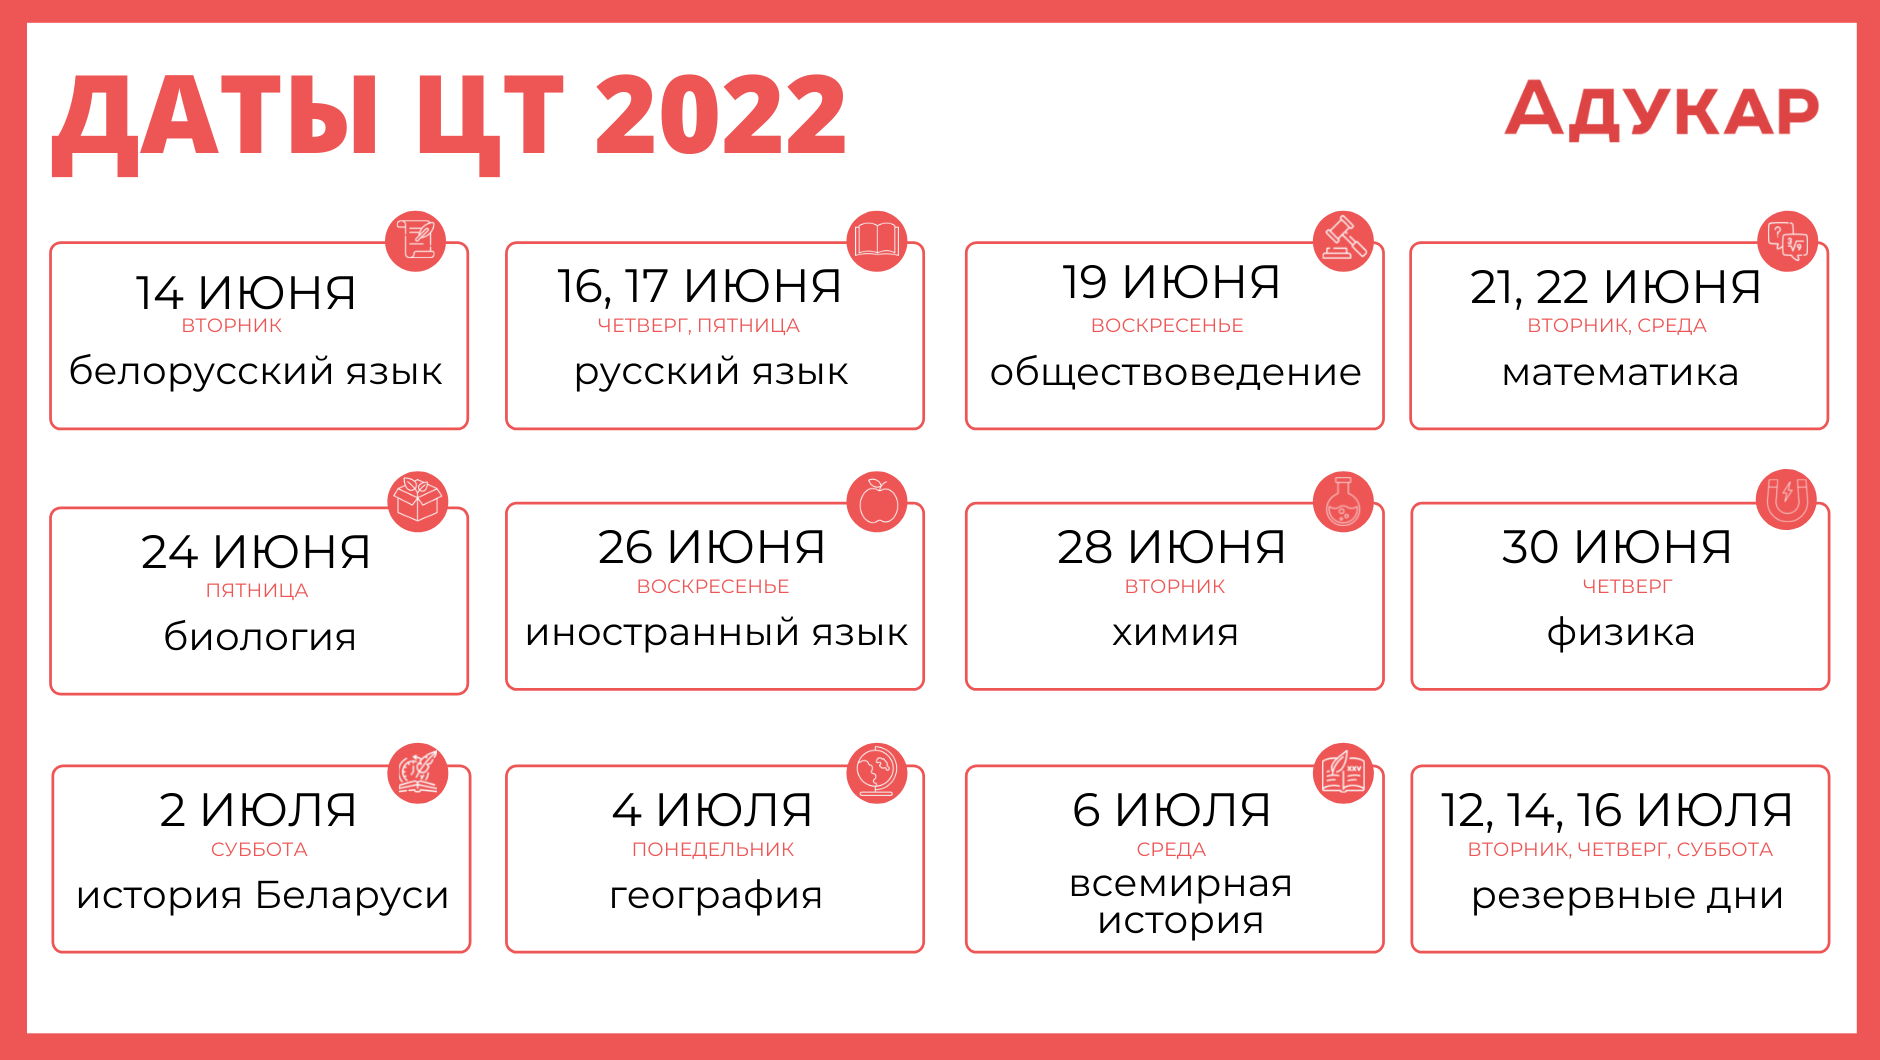 daty-ct-2022-osnovnye-i-rezervnye-dni-3